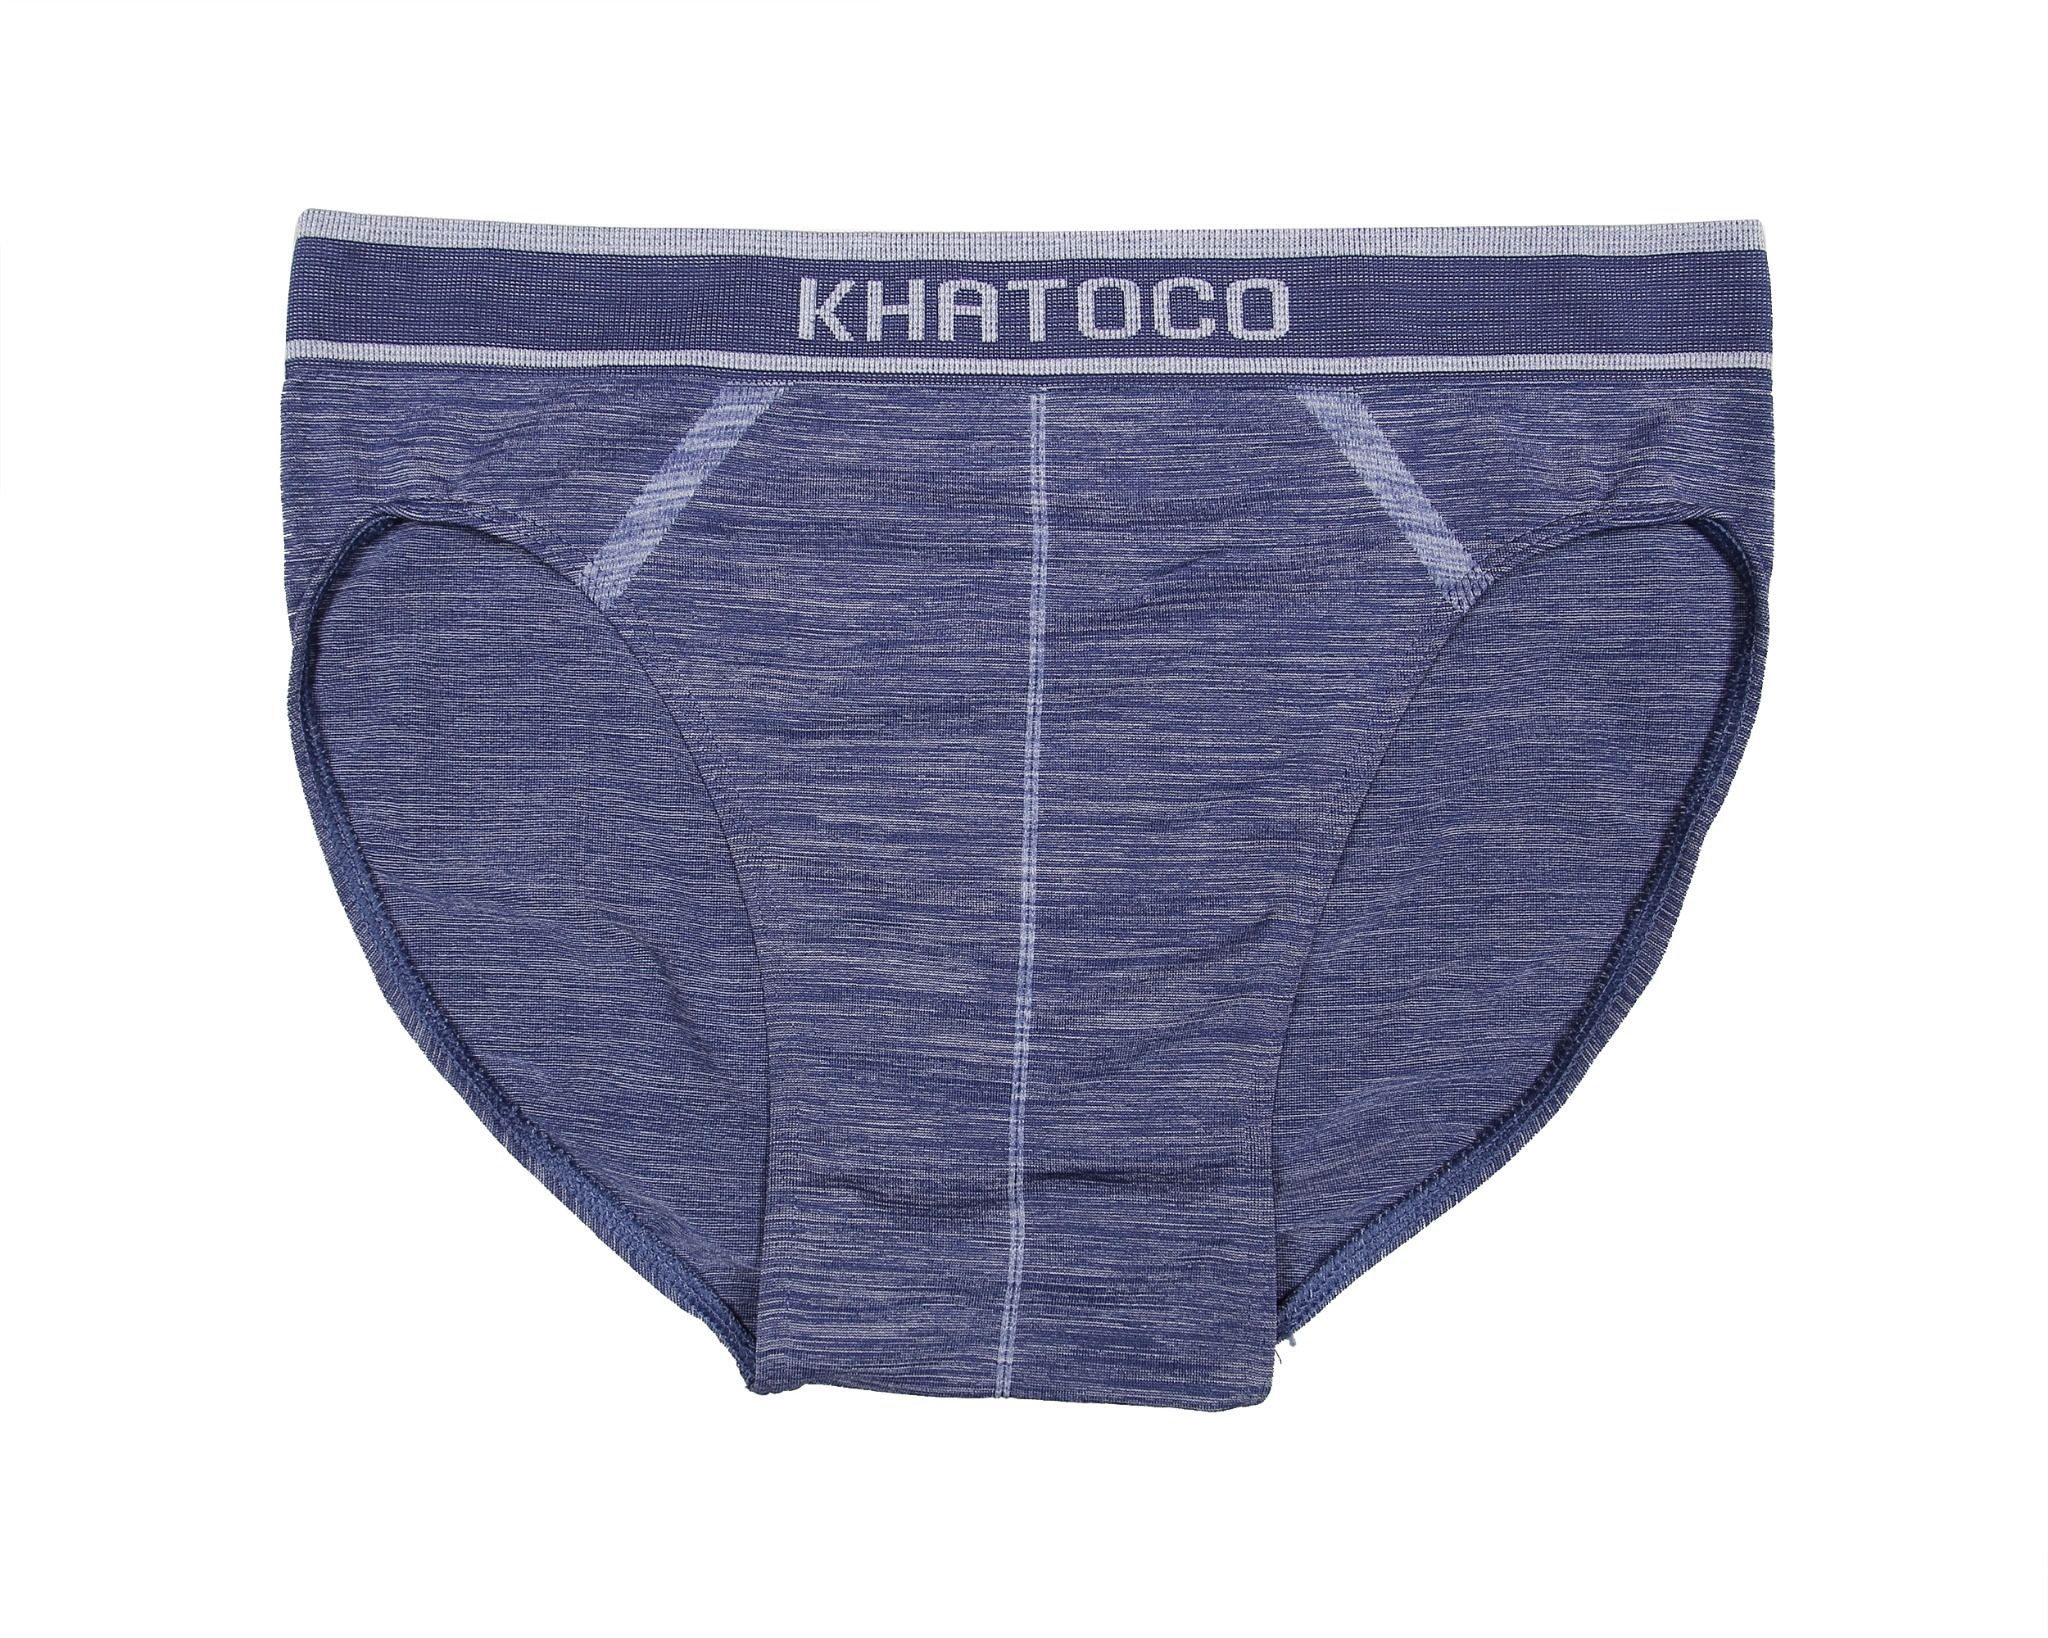  Quần lót nam brief Khatoco màu trơn tím xanh mã Q4M098R0-VNMA050-2411-T 